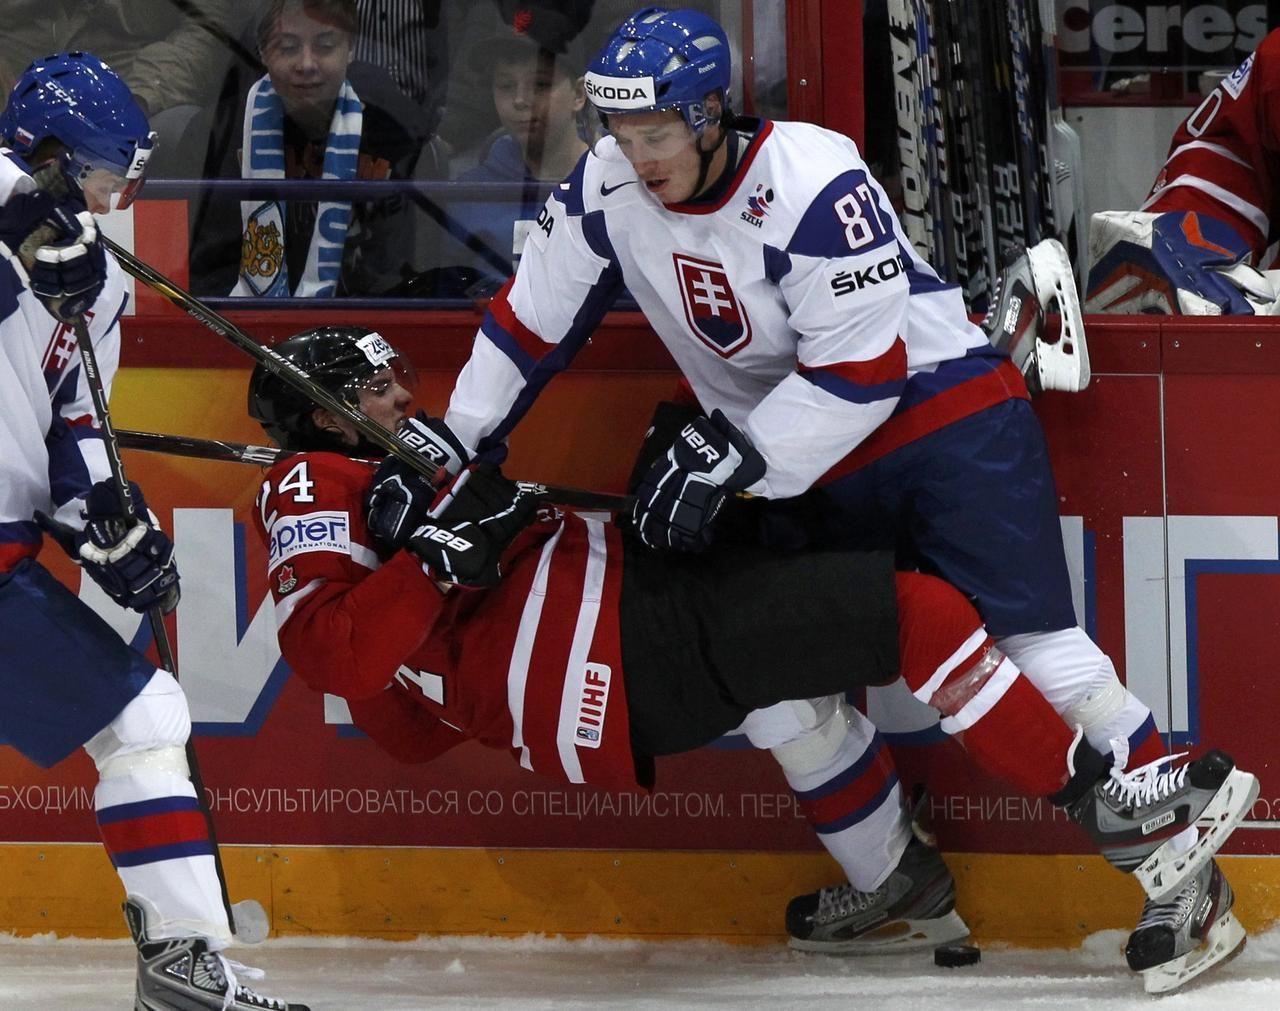 MS v hokeji 2012: Kanada - Slovensko (Benn, Haščák)